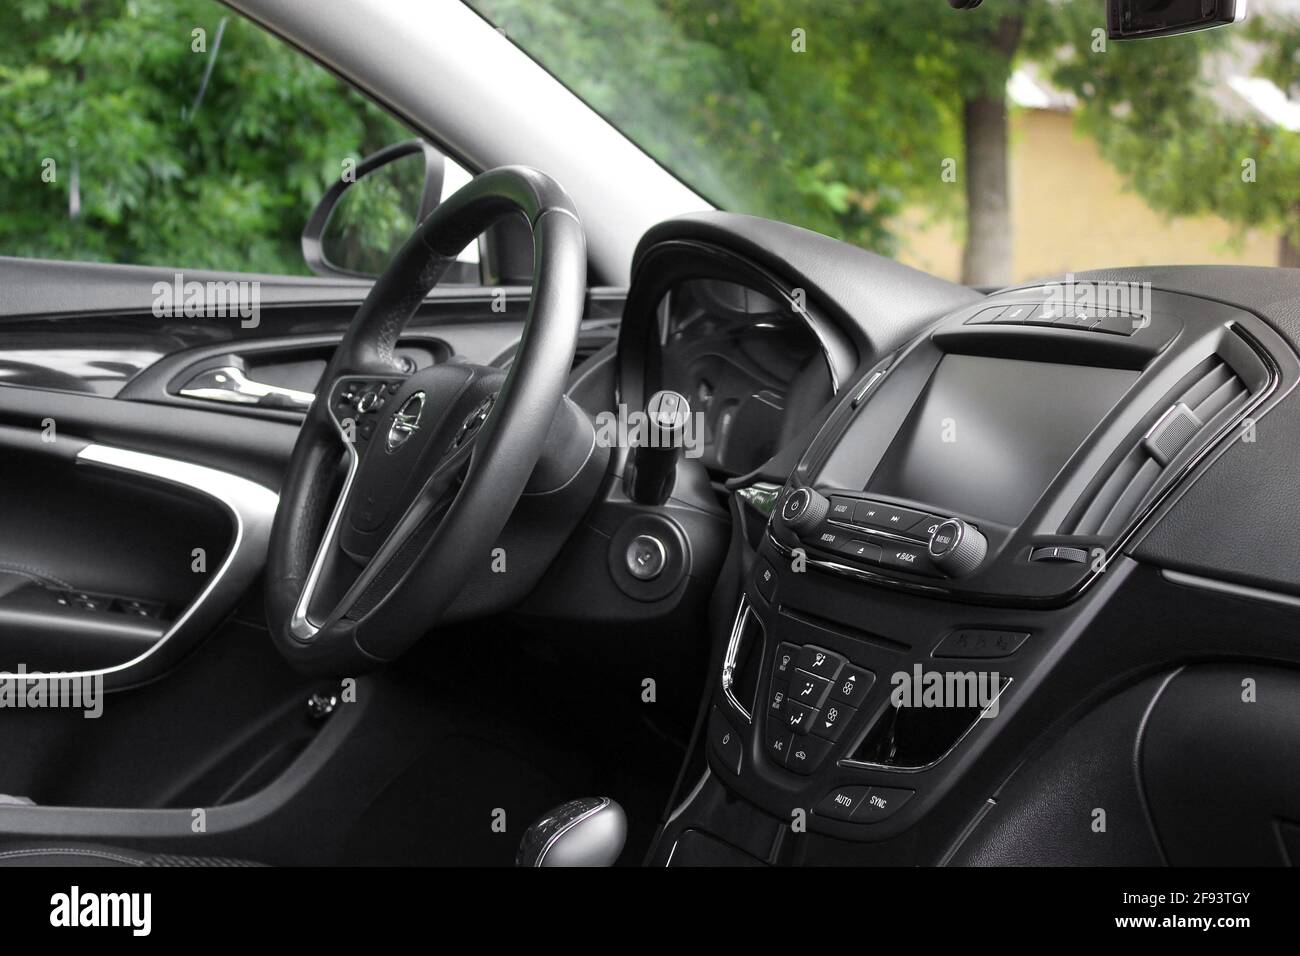 Chernihiv, Ukraine - 16 juin 2018 : intérieur de voiture Opel Insignia. Peau noire. Vue de l'intérieur d'une automobile moderne montrant le tableau de bord Banque D'Images